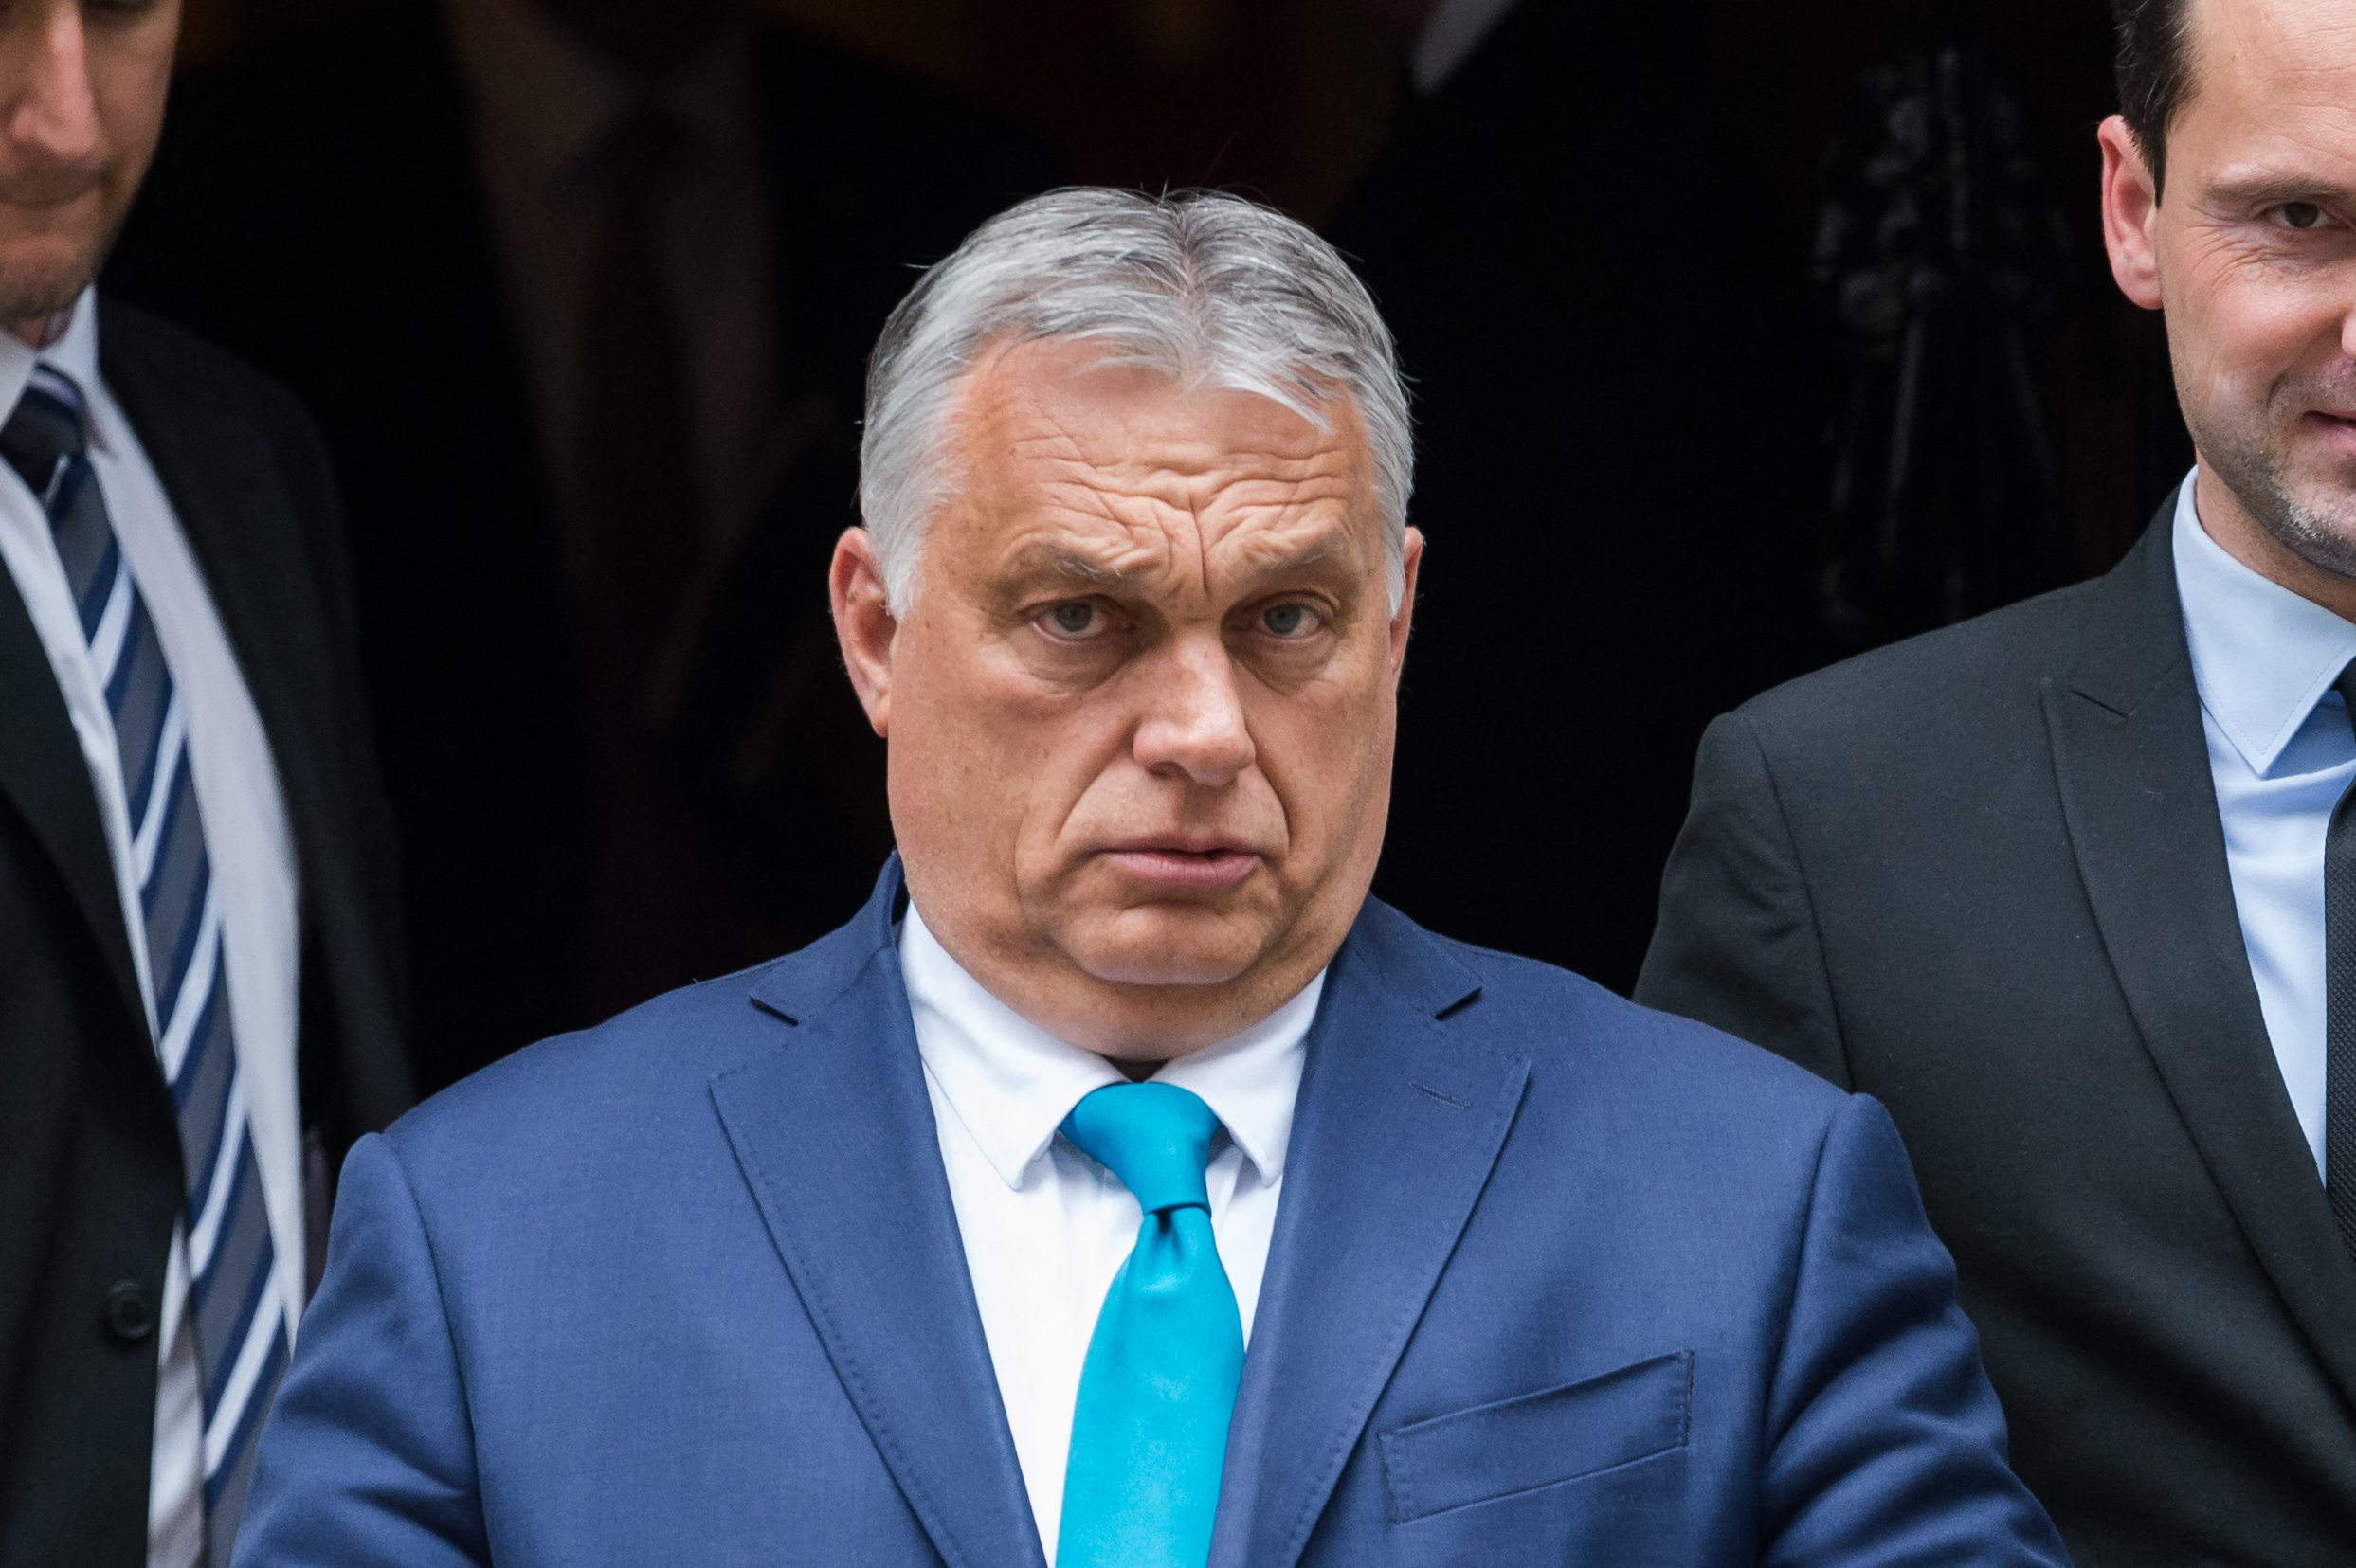 Hiába mondja Orbán, hogy nem kampányhúzás az szja visszaosztása, ha semmi más értelme nincs